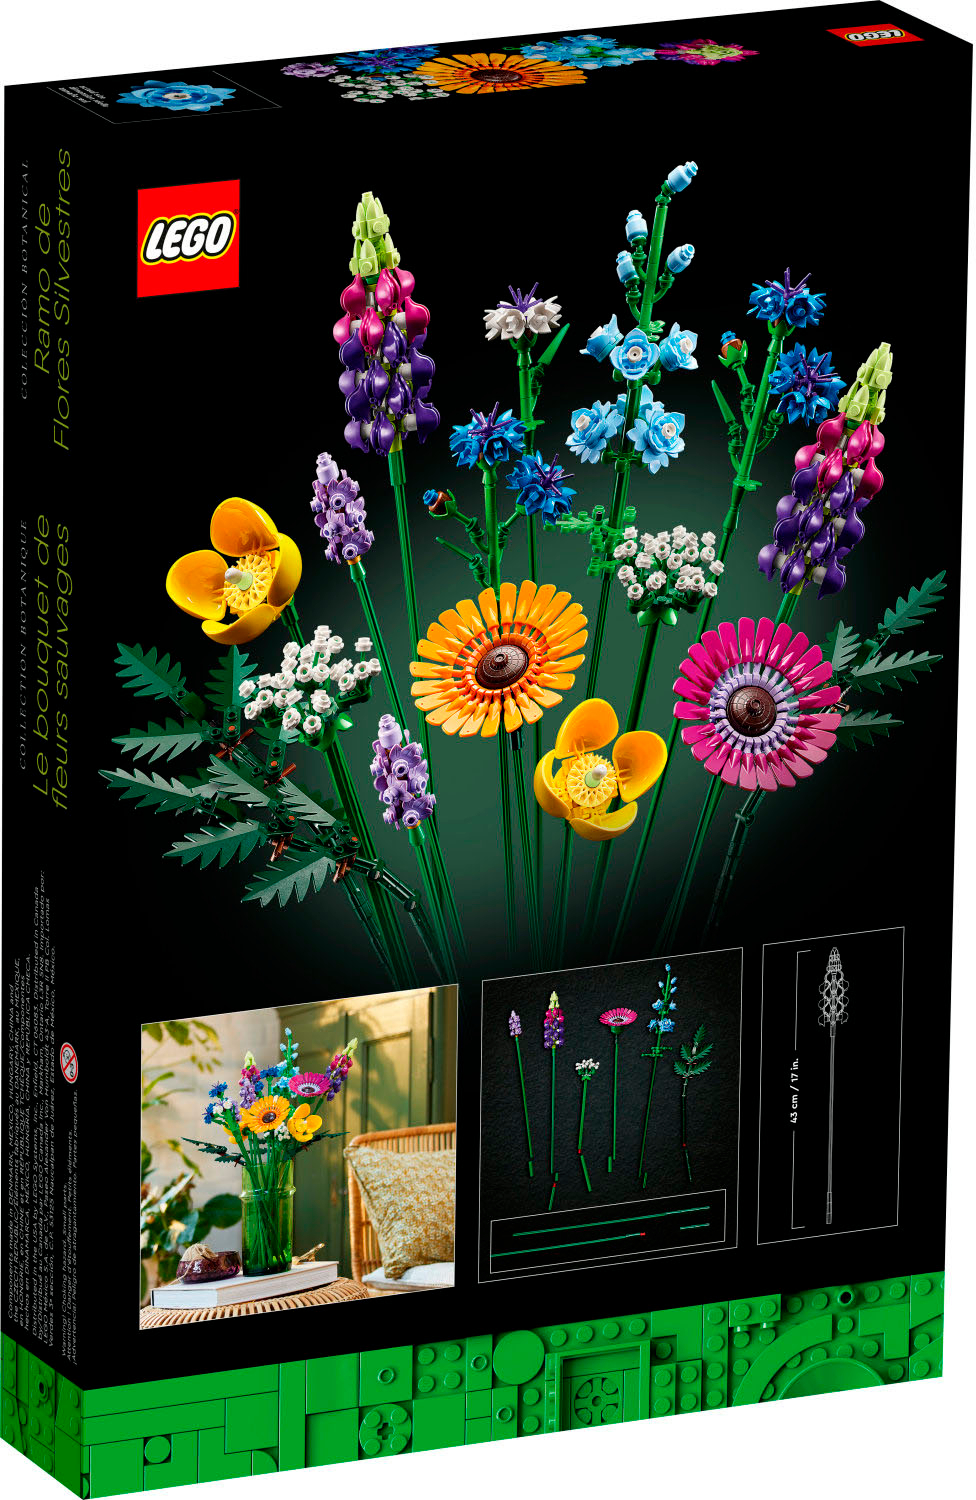 TOYSCENTER - VOLANTINO APERTURA TORINO - Lego icons 10313 bouquet fiori  selvatici finti con papaveri e lavanda artificiali, idea regalo adulti, botanical  collection